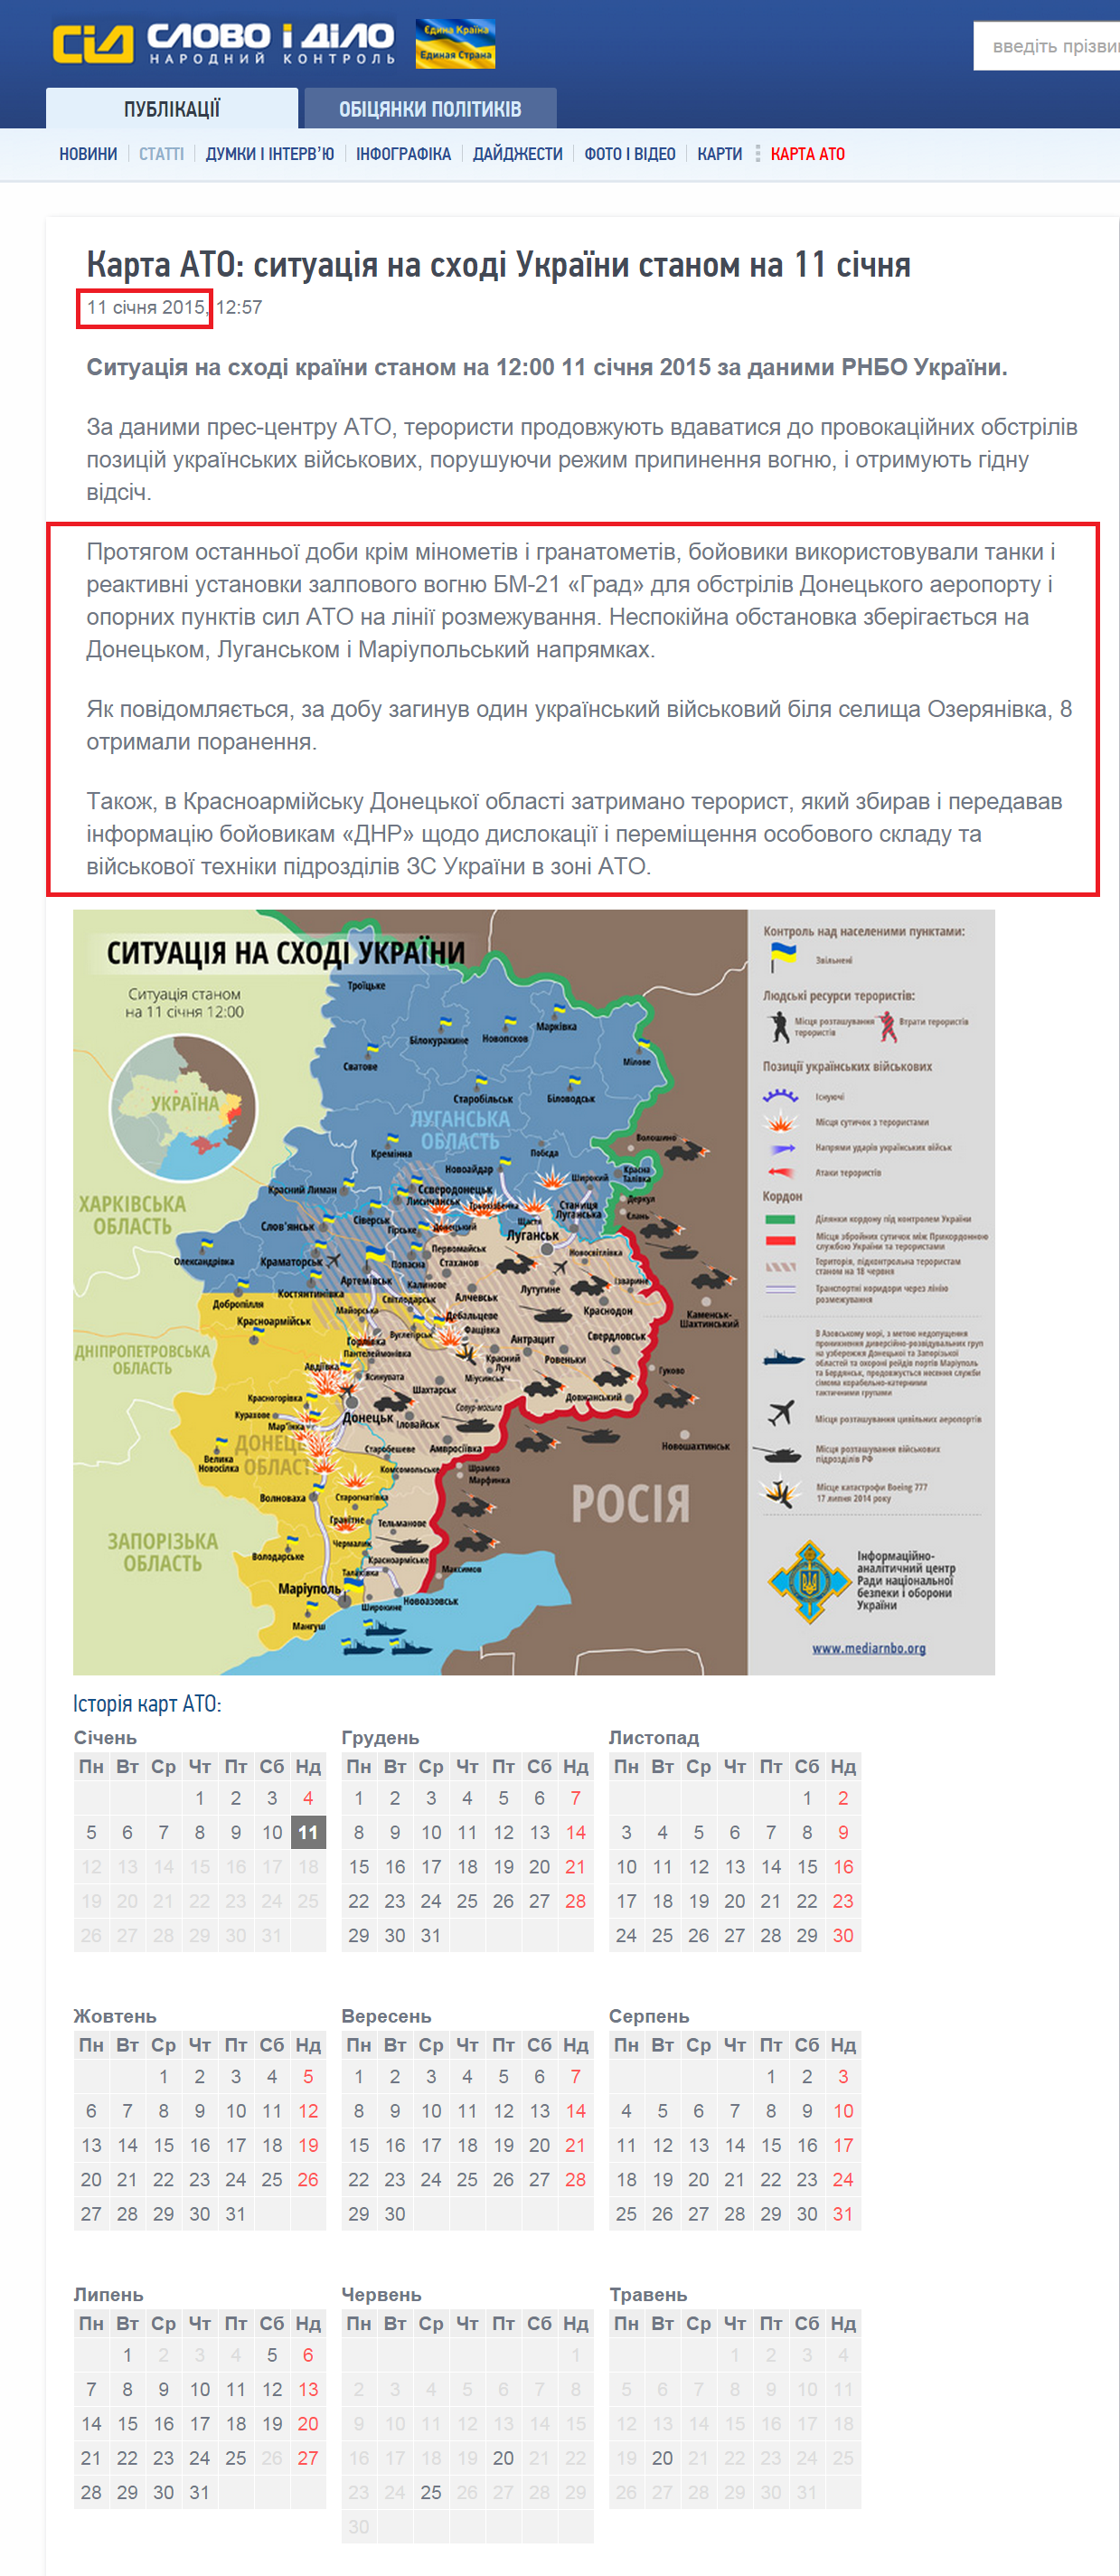 http://www.slovoidilo.ua/articles/6789/2015-01-11/karta-ato-situaciya-na-vostoke-ukrainy-po-sostoyaniyu-na-11-yanvarya.html